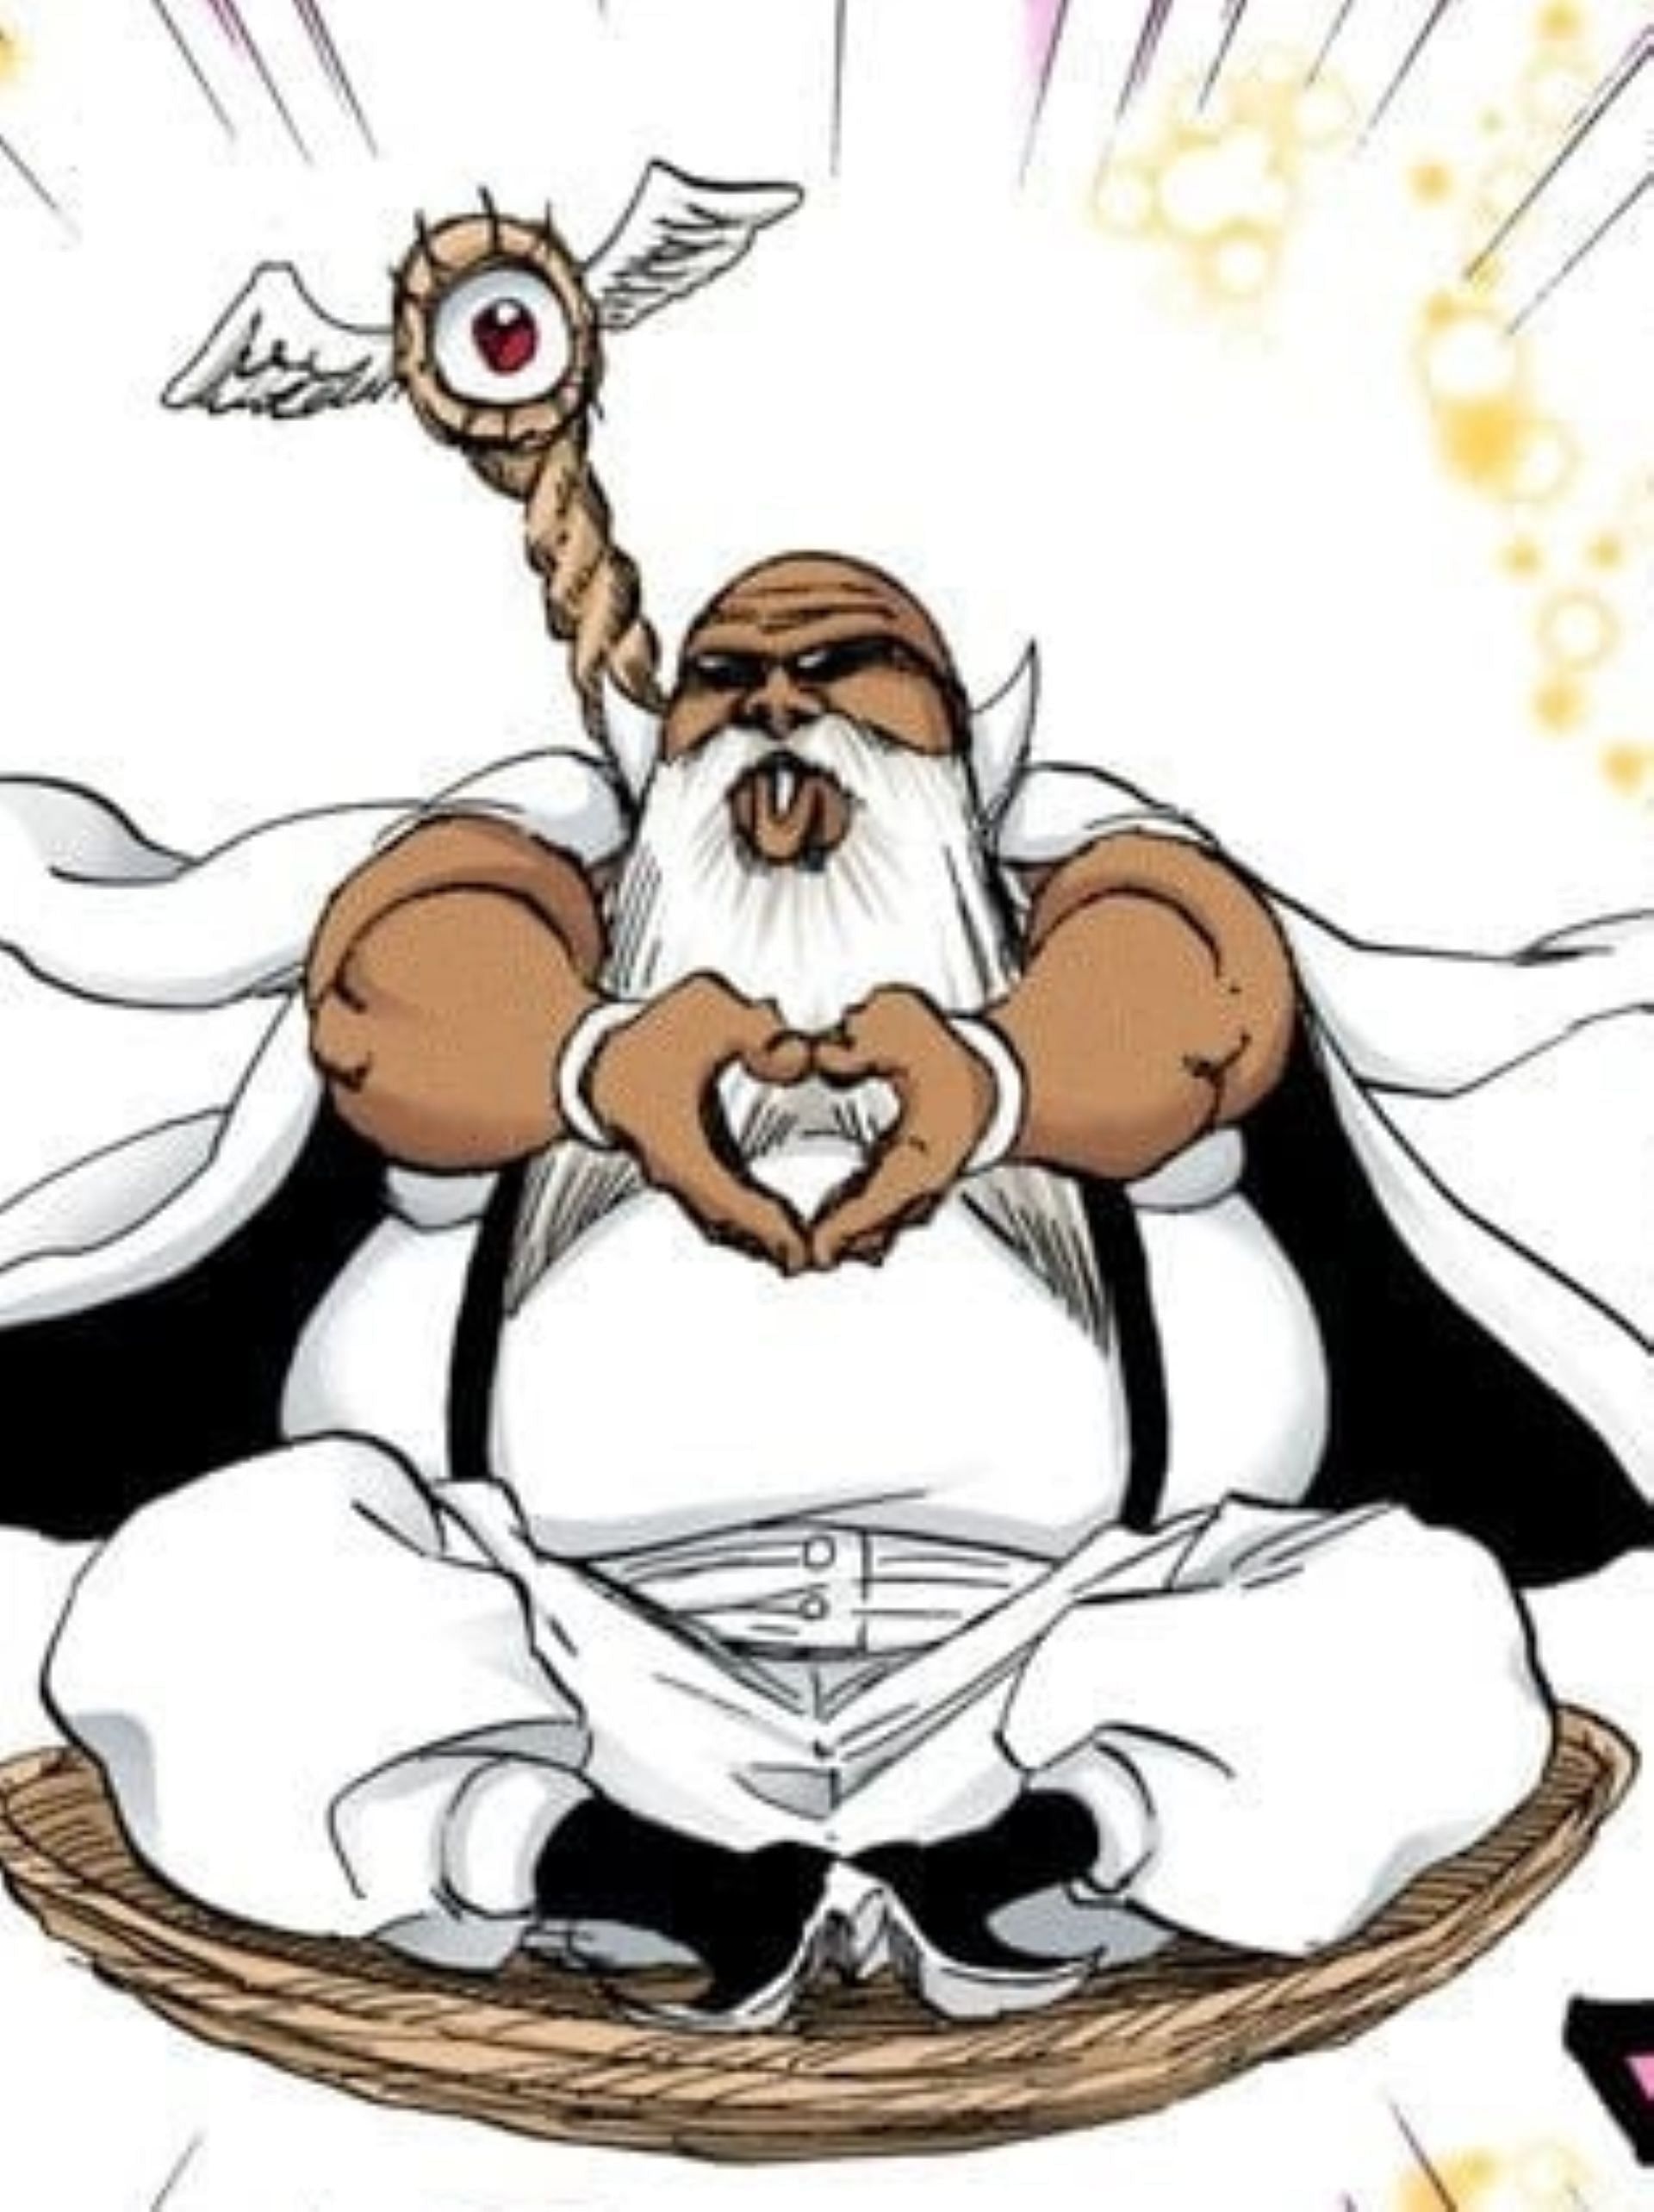 Pepe in the Bleach TYBW manga (Image via Tite Kubo/Shueisha)